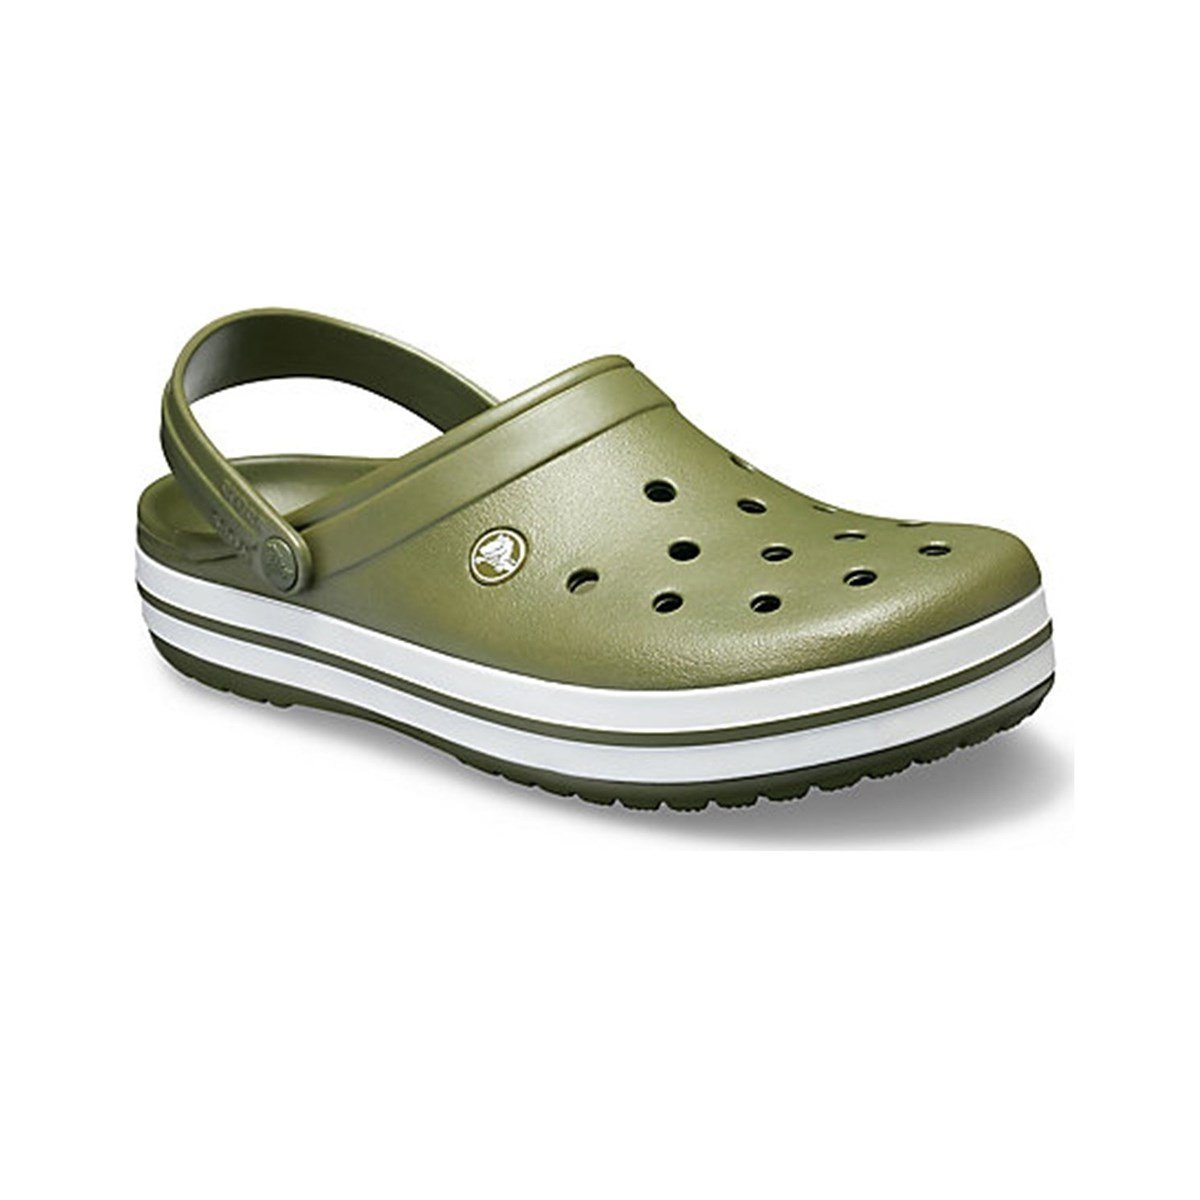 Crocs 11016 Crocband Clog Haki Yeşil Kadın Terlik | Etichet